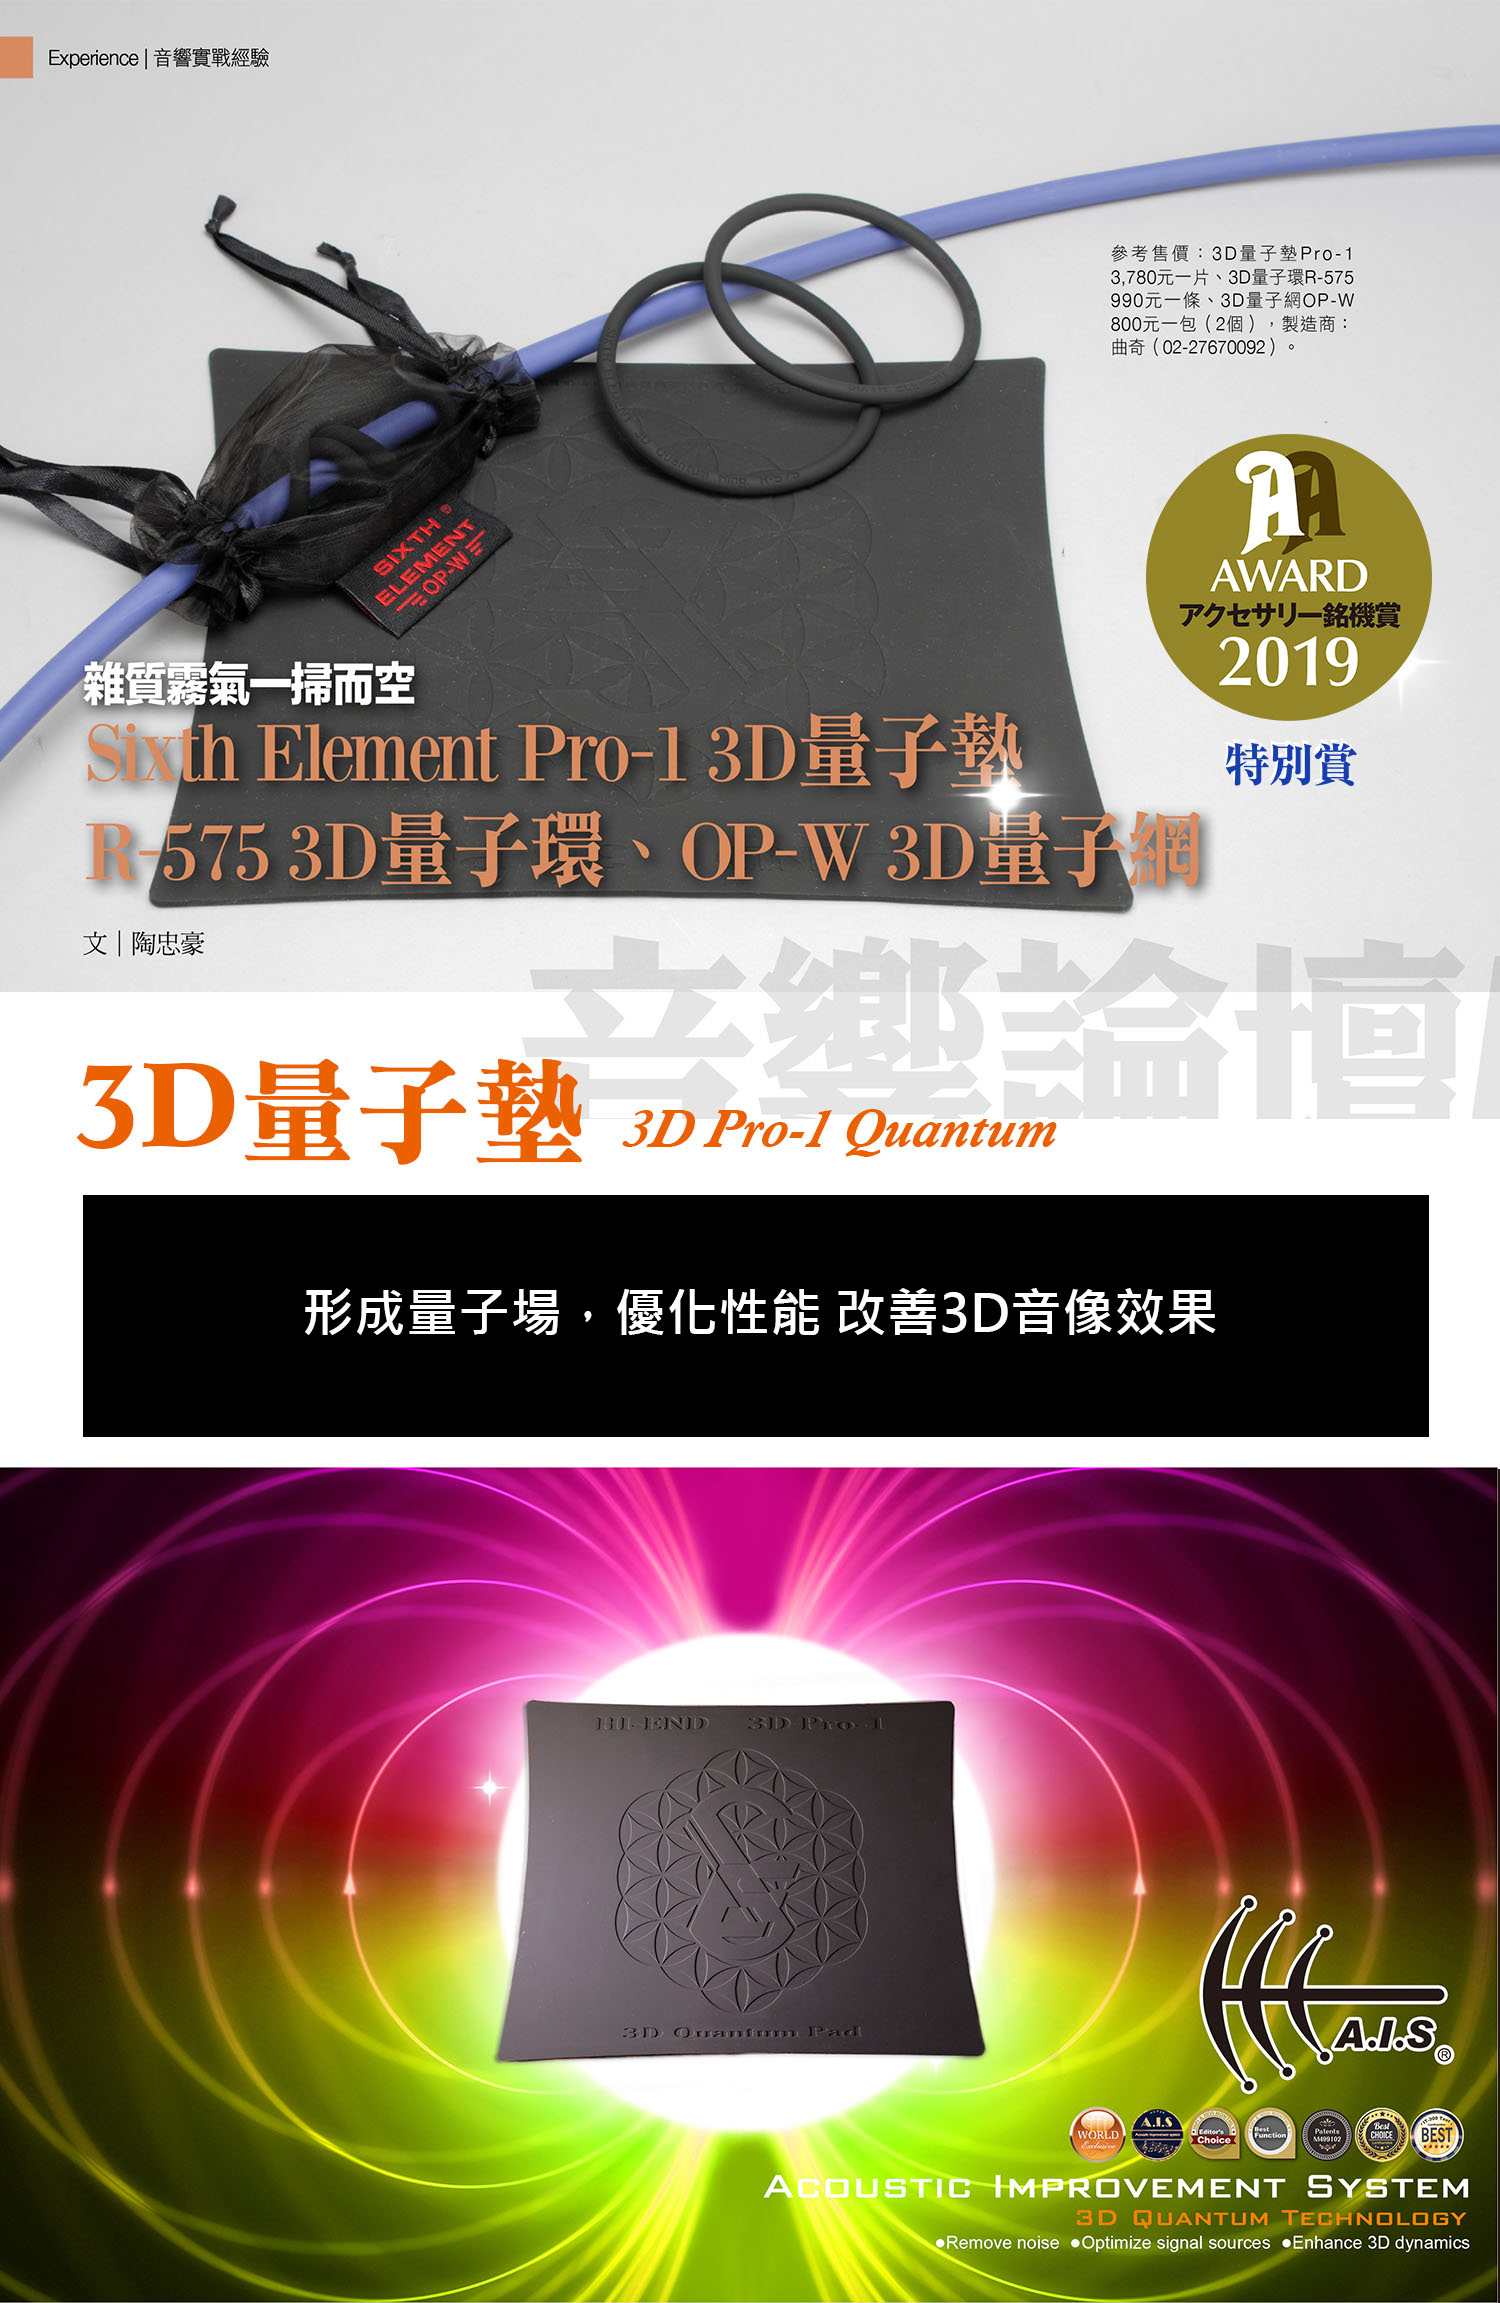 3D Pro-1 Quantum Pad (PLUS)